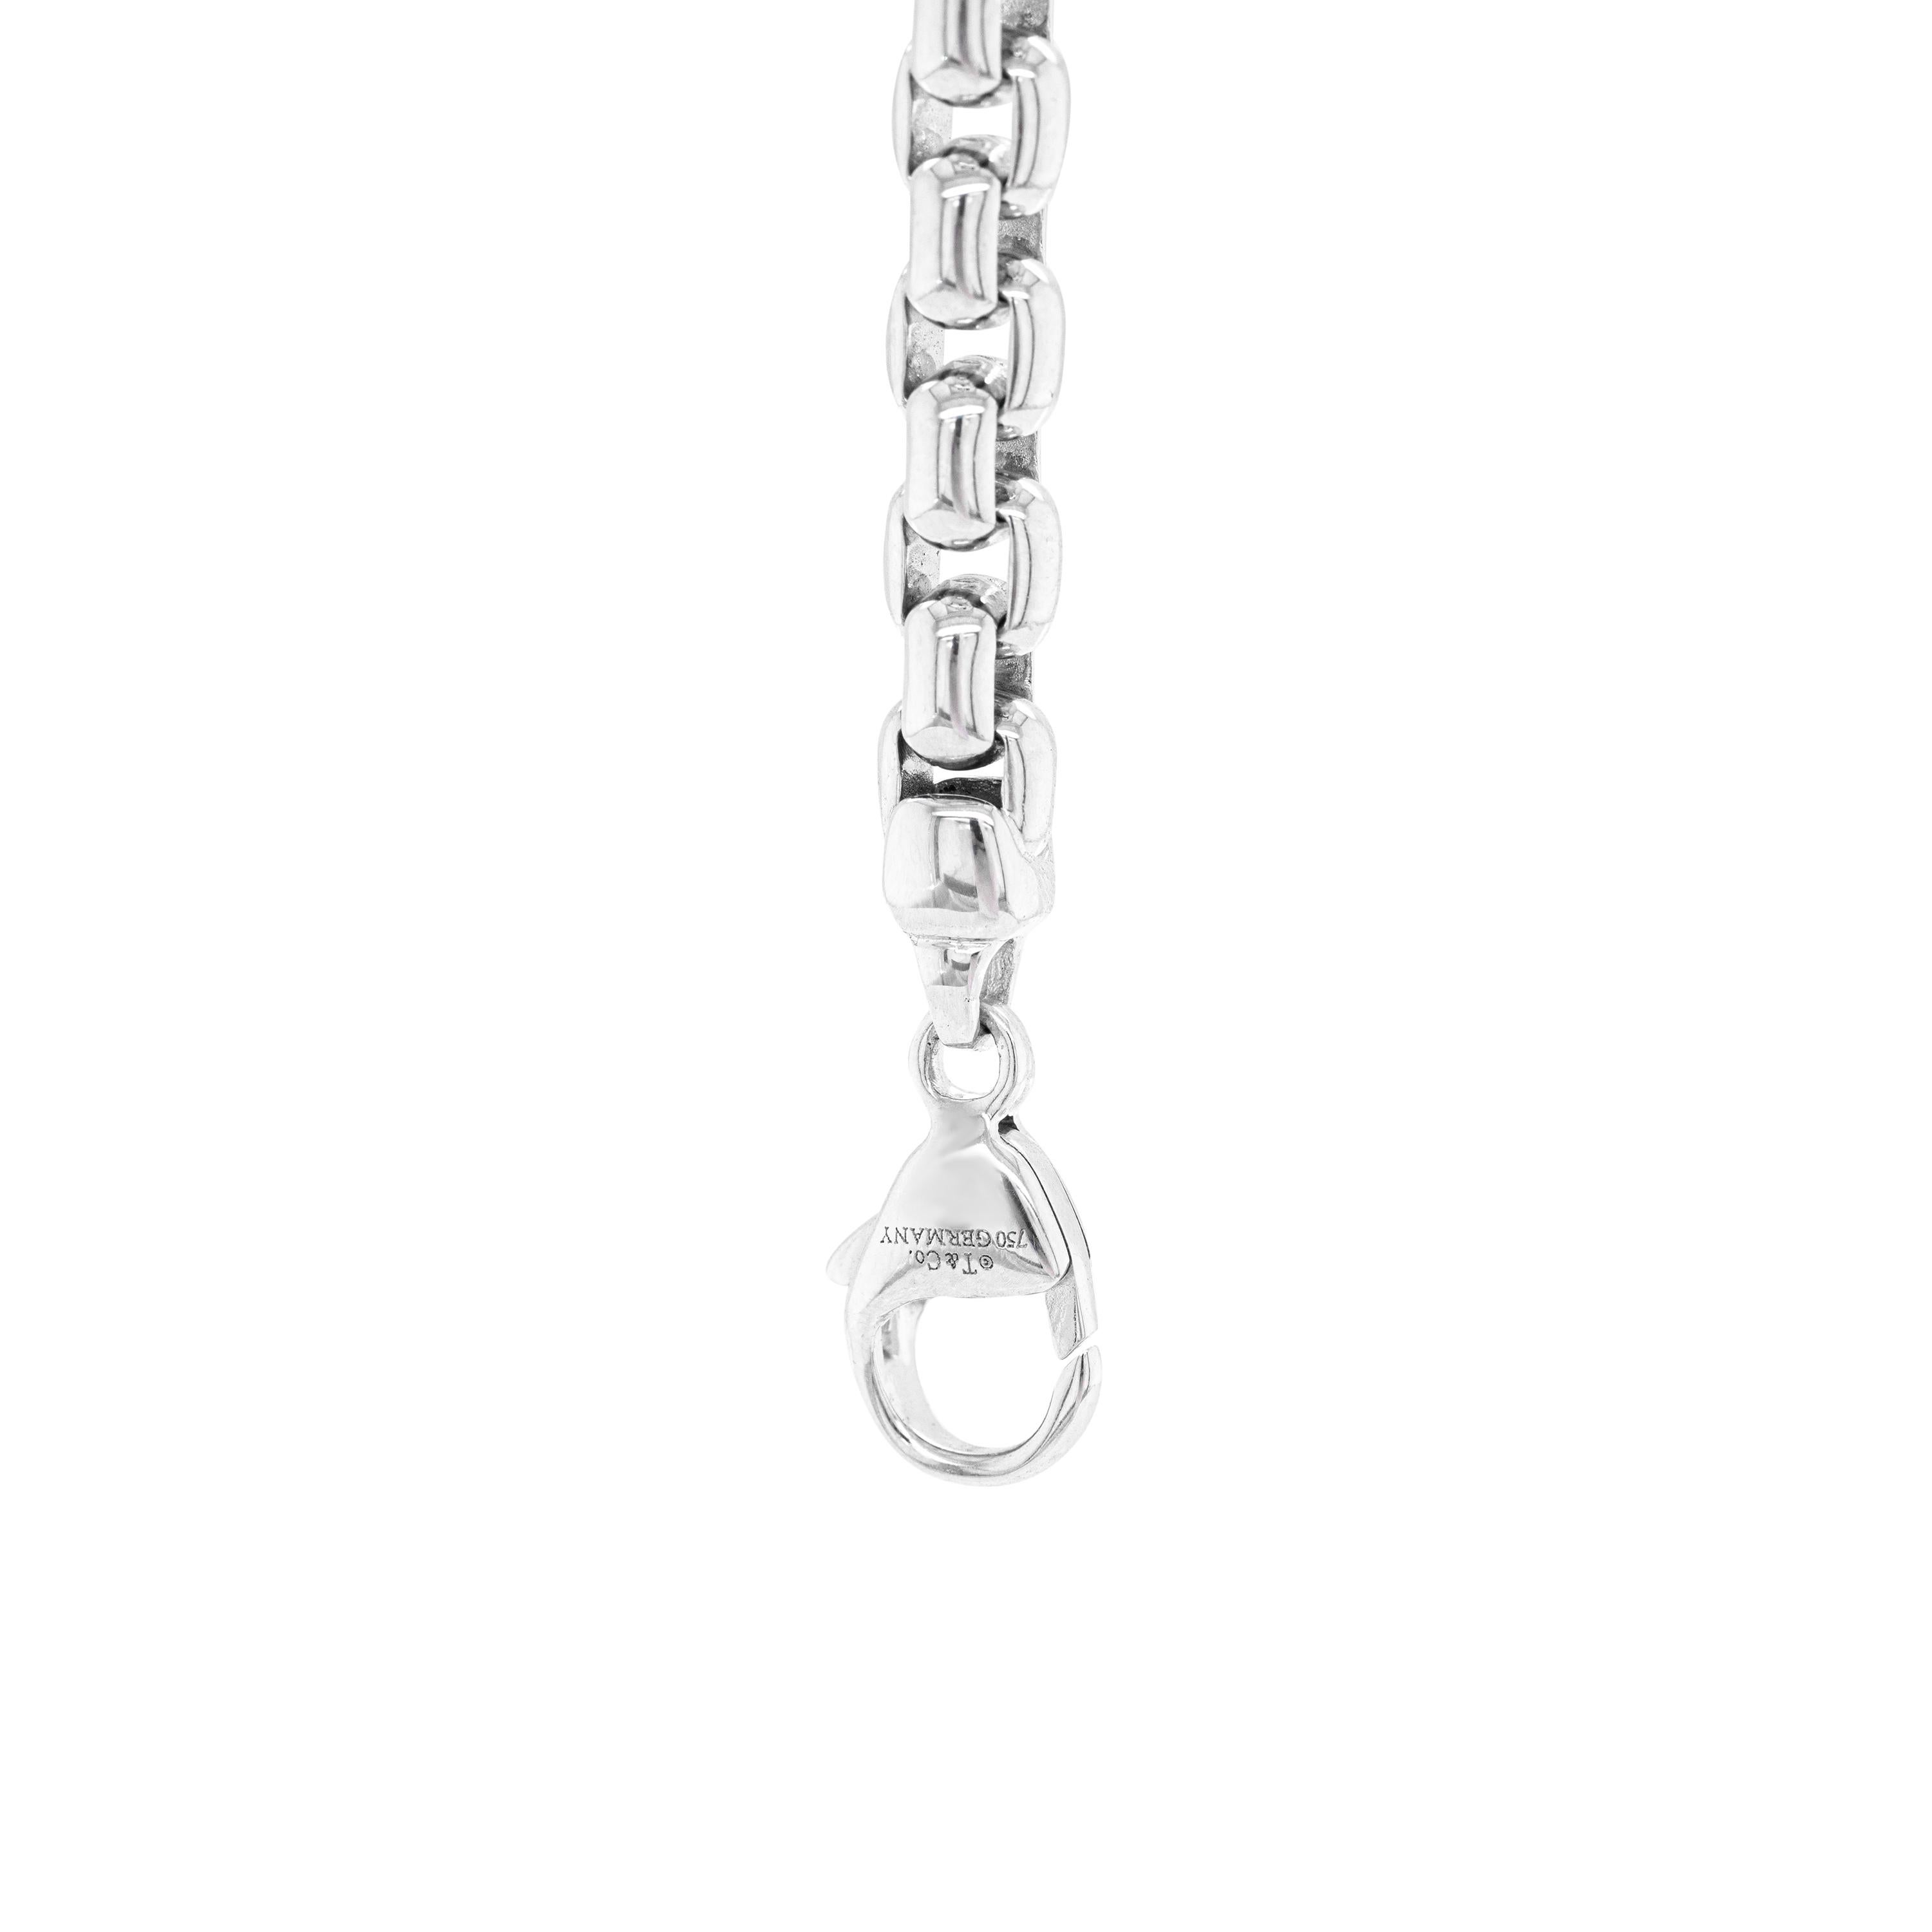 Ce bracelet à chaîne classique de Tiffany & Co. présente un design à maillons arrondis en or blanc 18 carats massif et poli. Ce magnifique bracelet se ferme à l'aide d'un fermoir en forme de homard, mesure 8,25